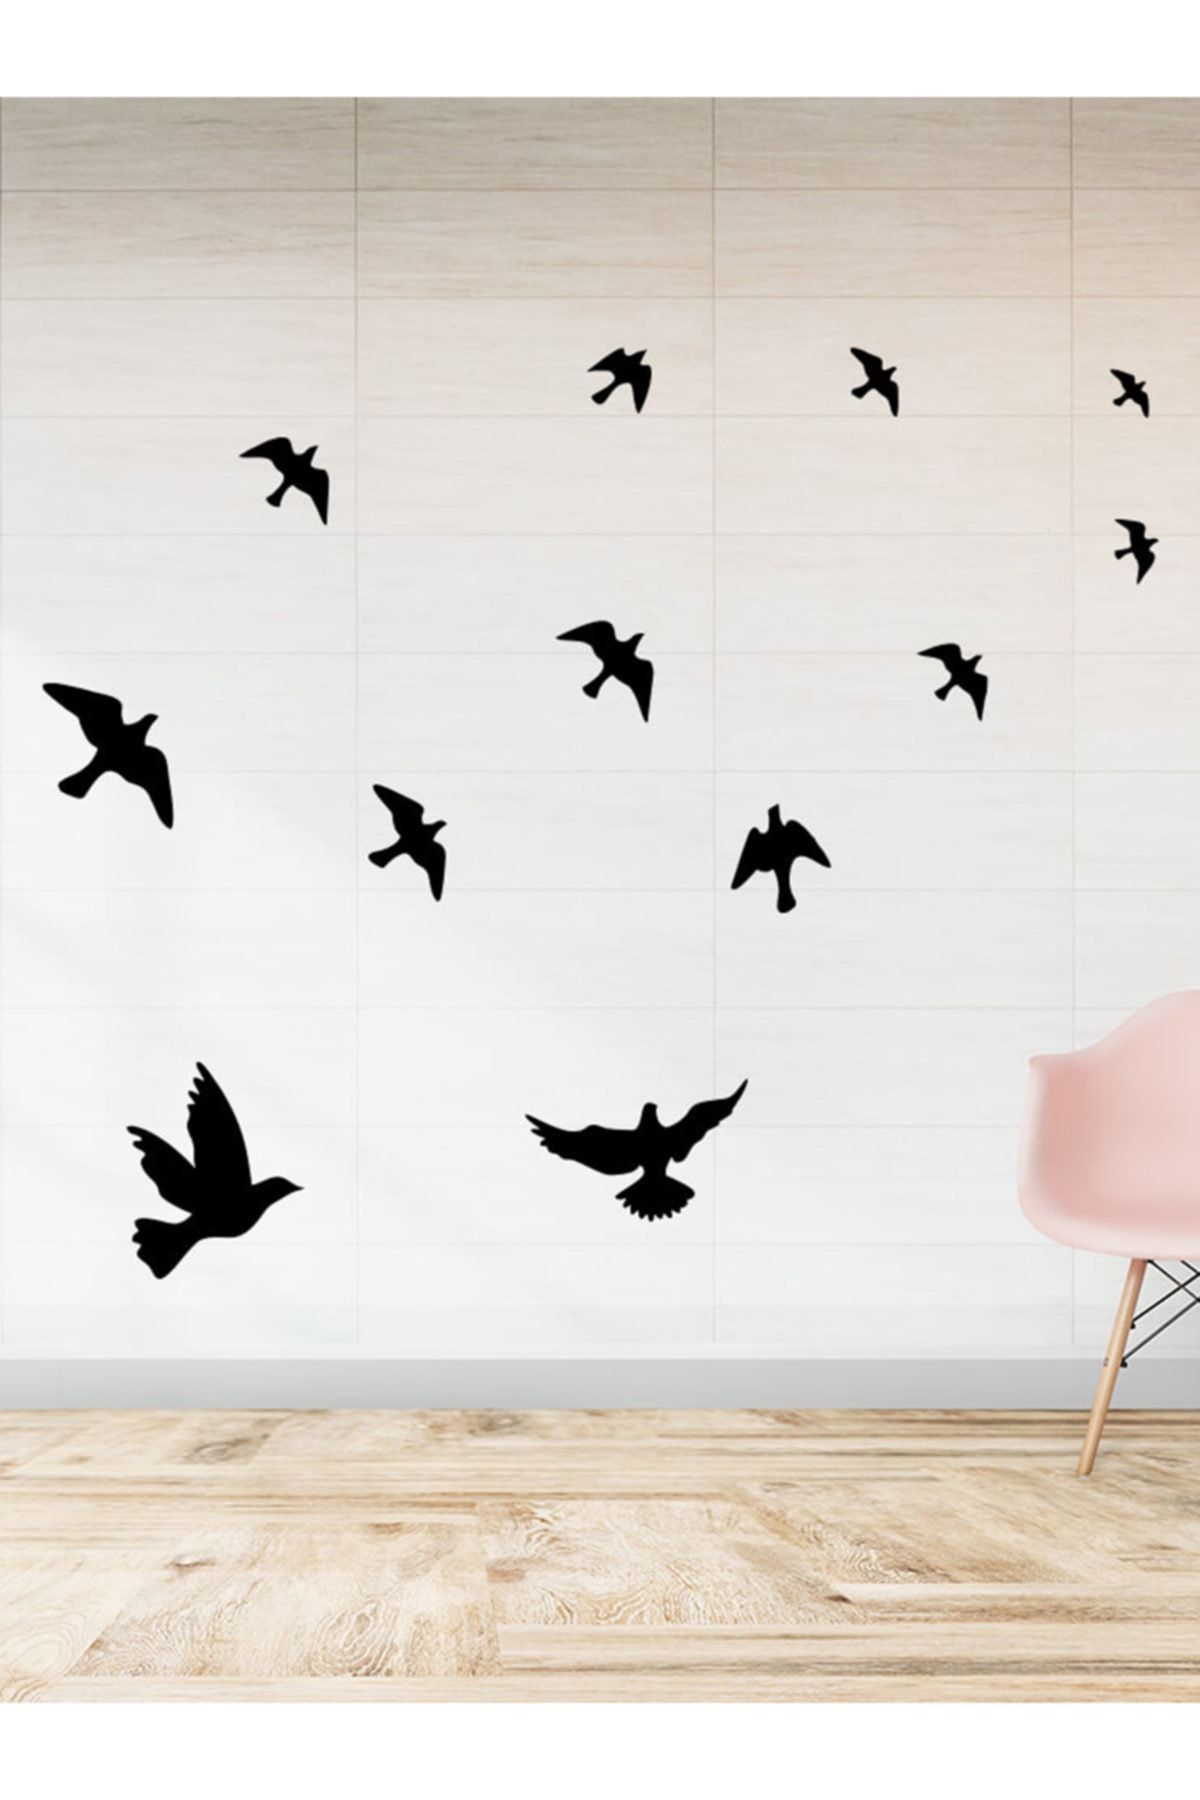 New Jargon Kuş Sürüsü Uçuşan Kuşlar Serisi Duvar Sticker Yapıştırma - Siyah